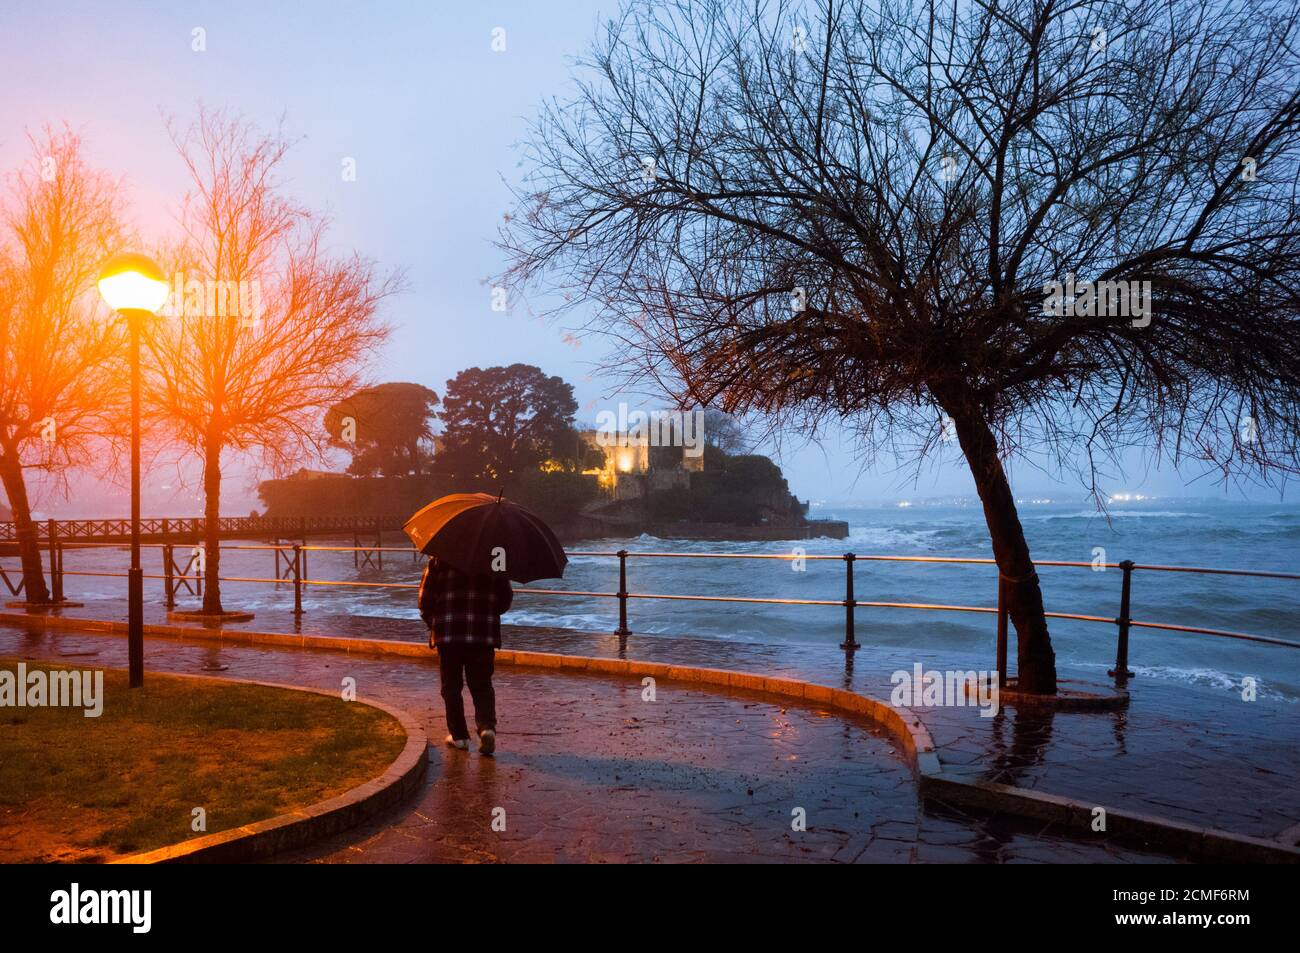 Oleiros, provincia de A Coruña, Galicia, España - 11 de febrero de 2020 : un hombre que sostiene un paraguas camina en la orilla pasando por el ingenio isleño de Santa Cristina Foto de stock